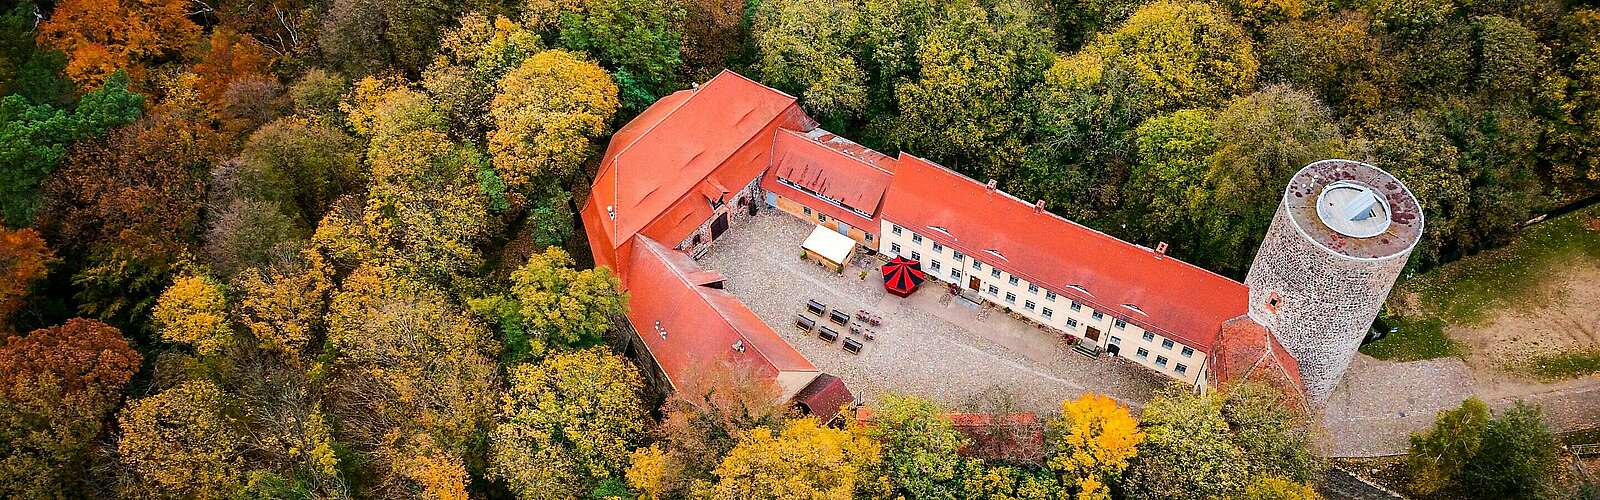 Burg Rabenstein im Herbst,
        
    

        Foto: Fotograf / Lizenz - Media Import/Julian Hohlfeld